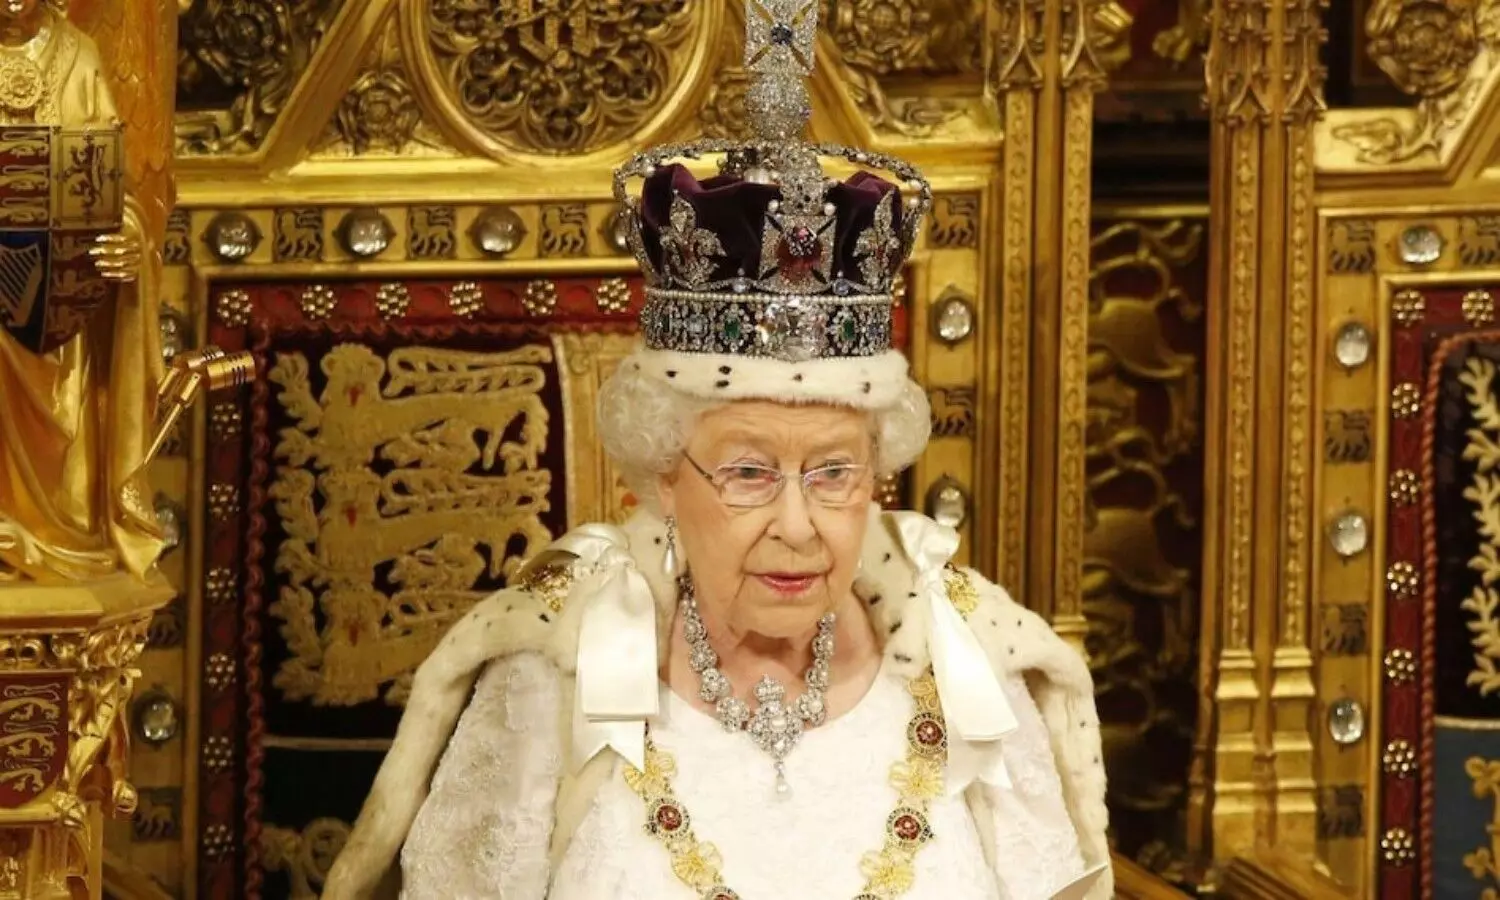 Queen Elizabeth II Death